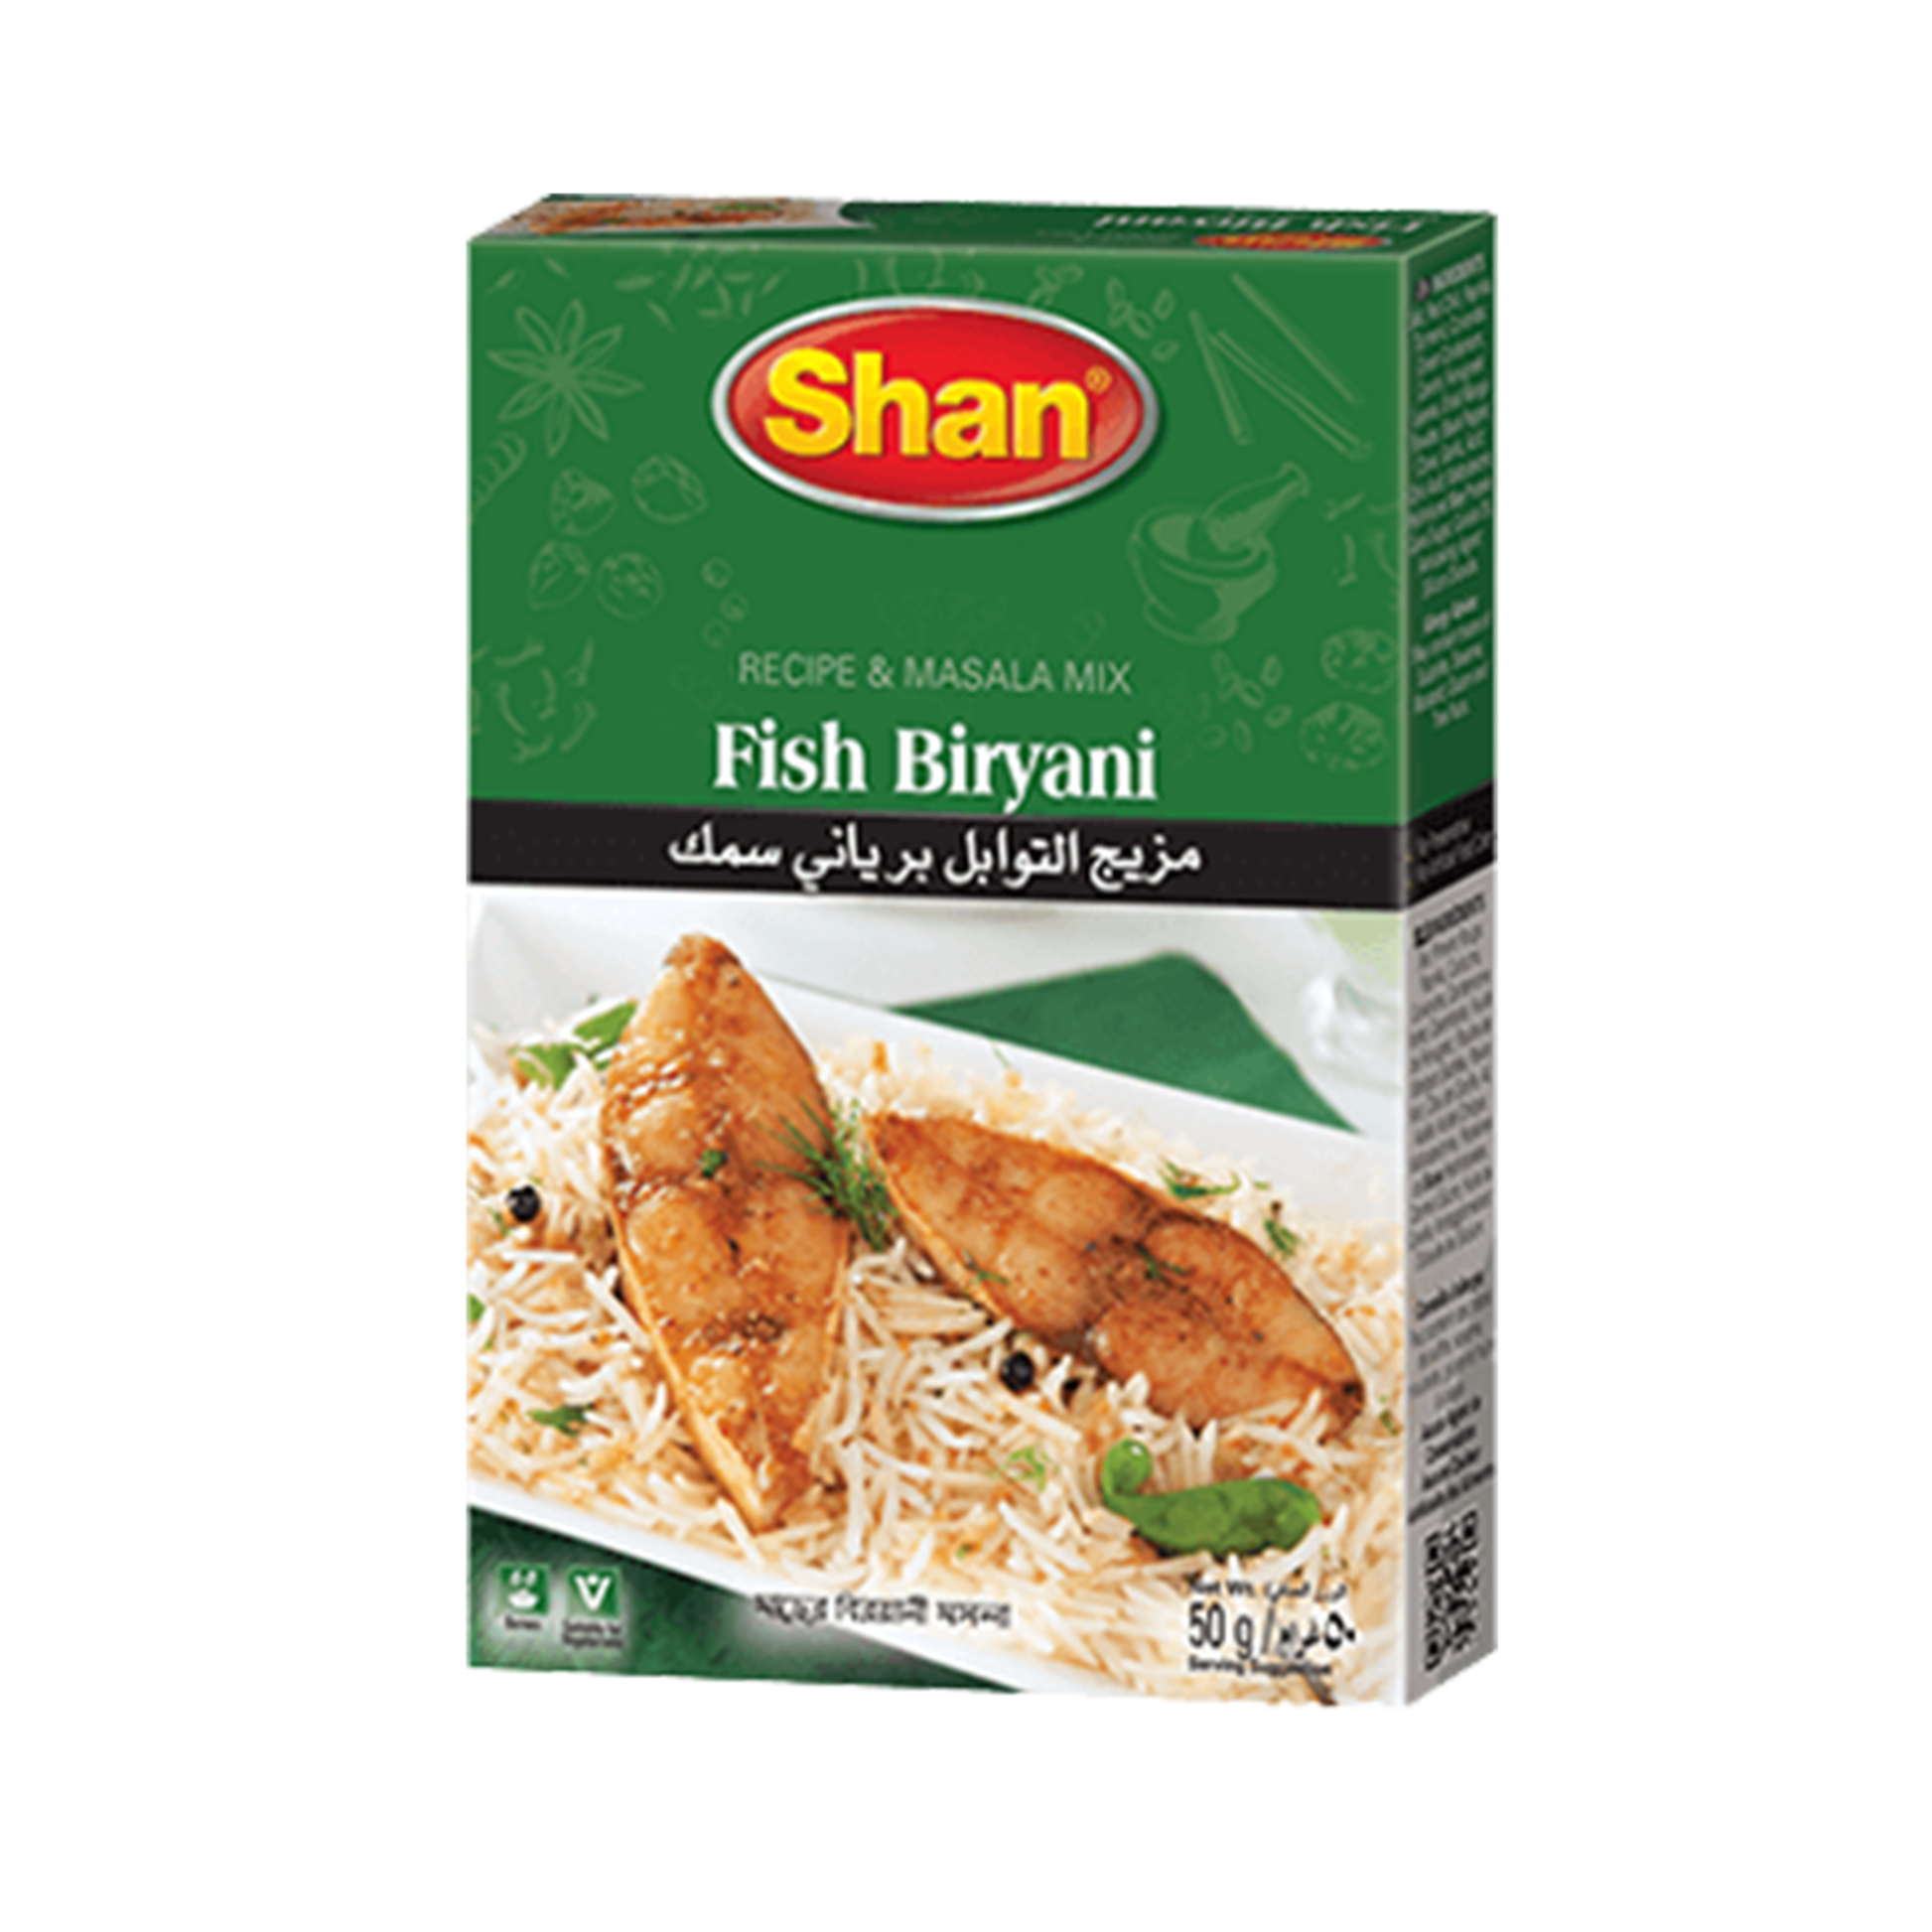 SHAN Fish Biryani 50gm Bx_12 VishalBazar